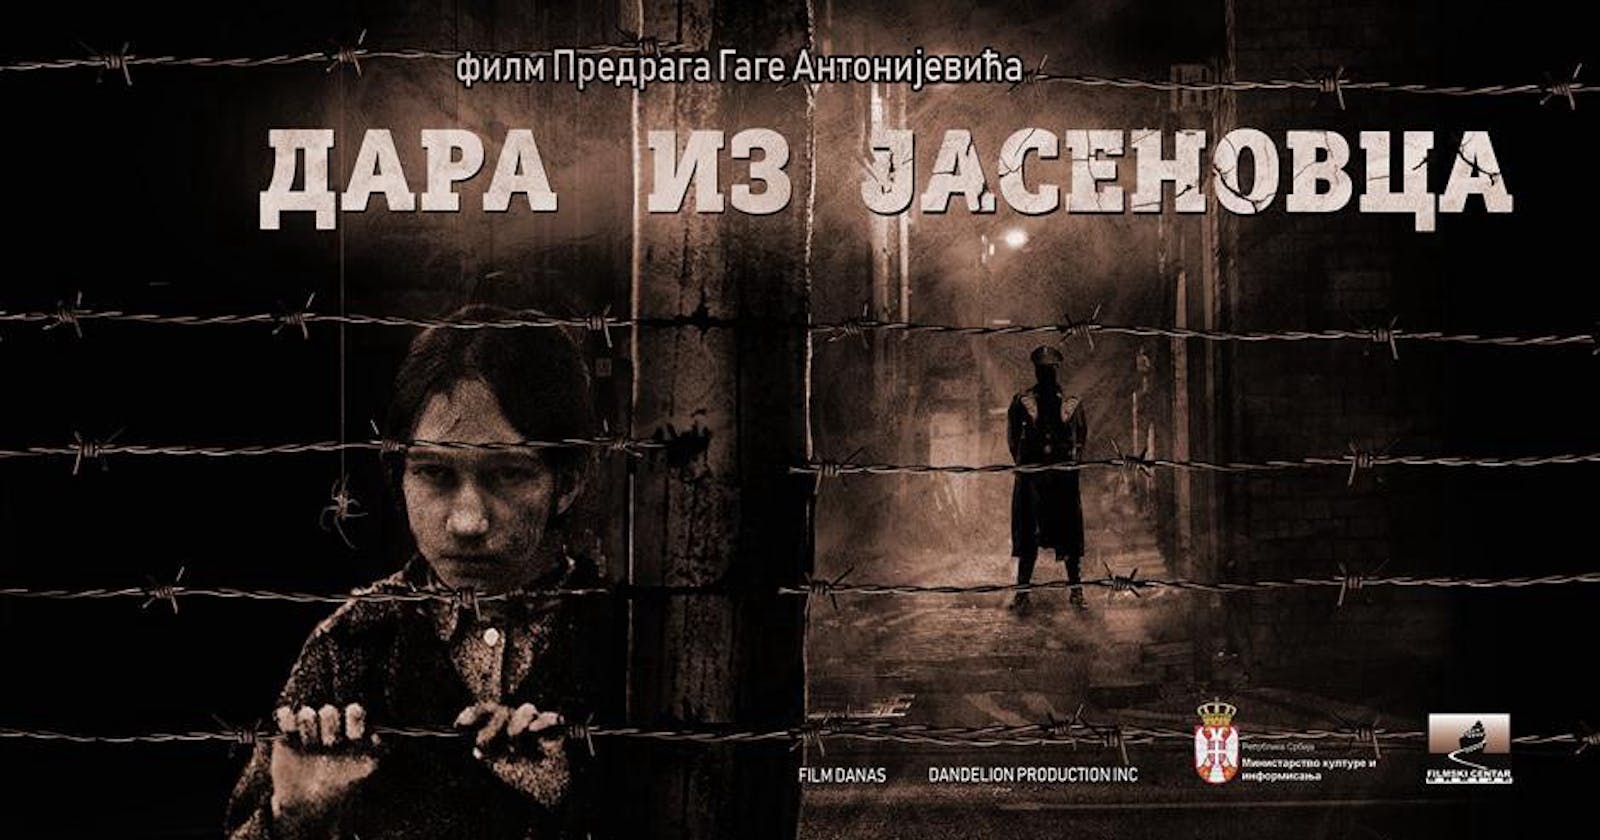 гледајте ХД — Дара из Јасеновца [Dara of Jasenovac] цео филм титлова на српском језику 2021